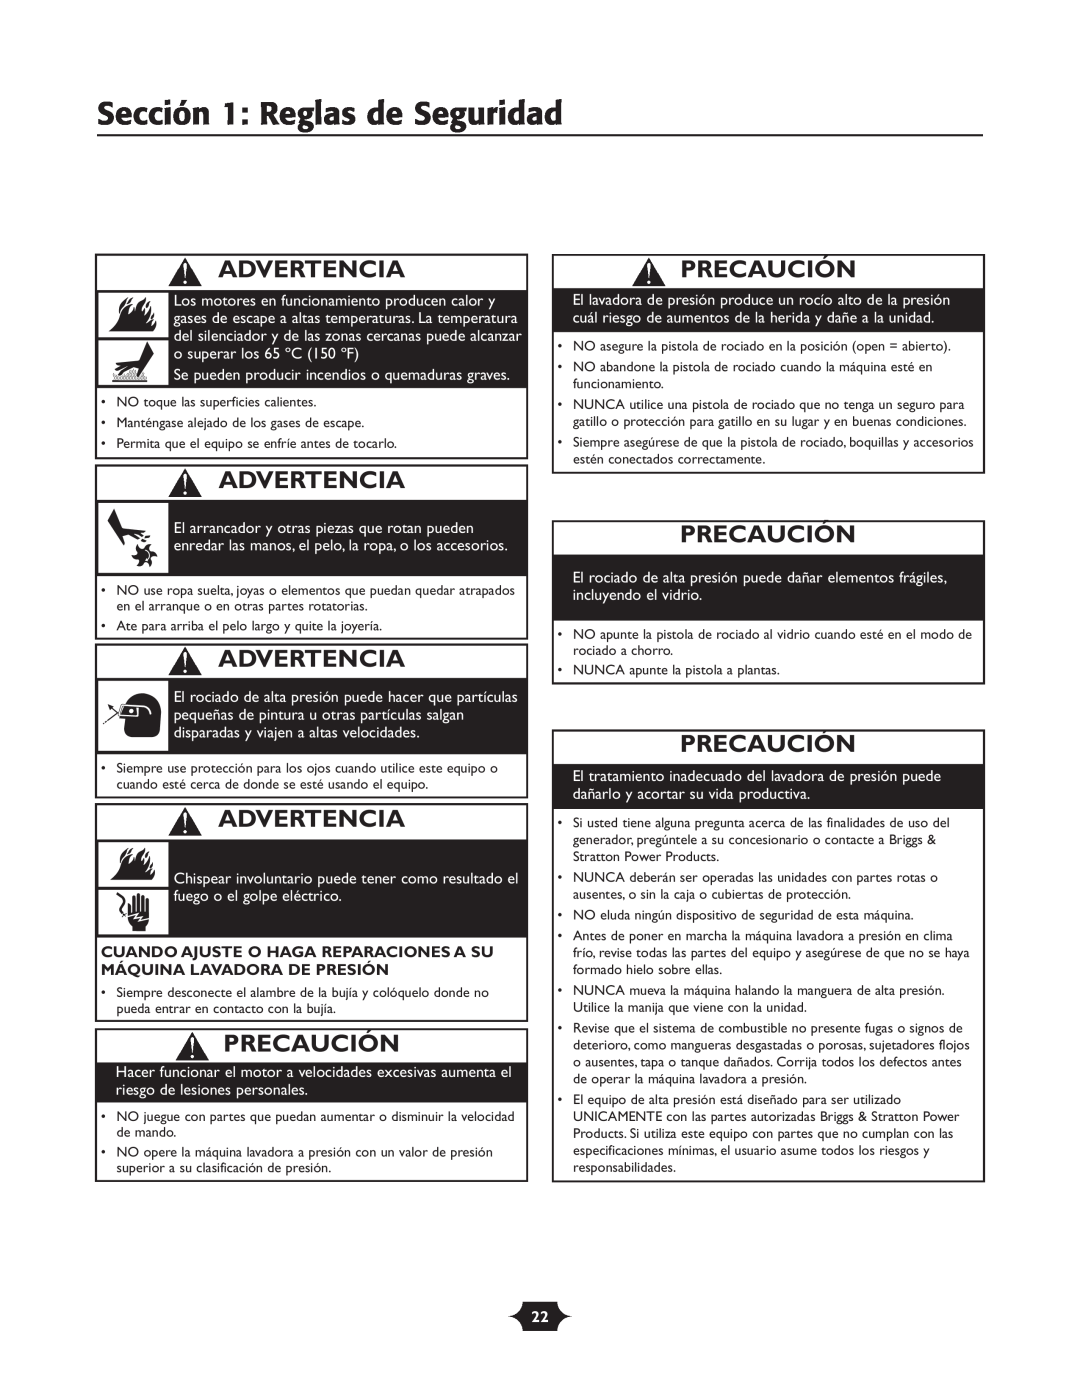 Troy-Bilt 20207 manual Precaución, Sección 1 Reglas de Seguridad, Advertencia 